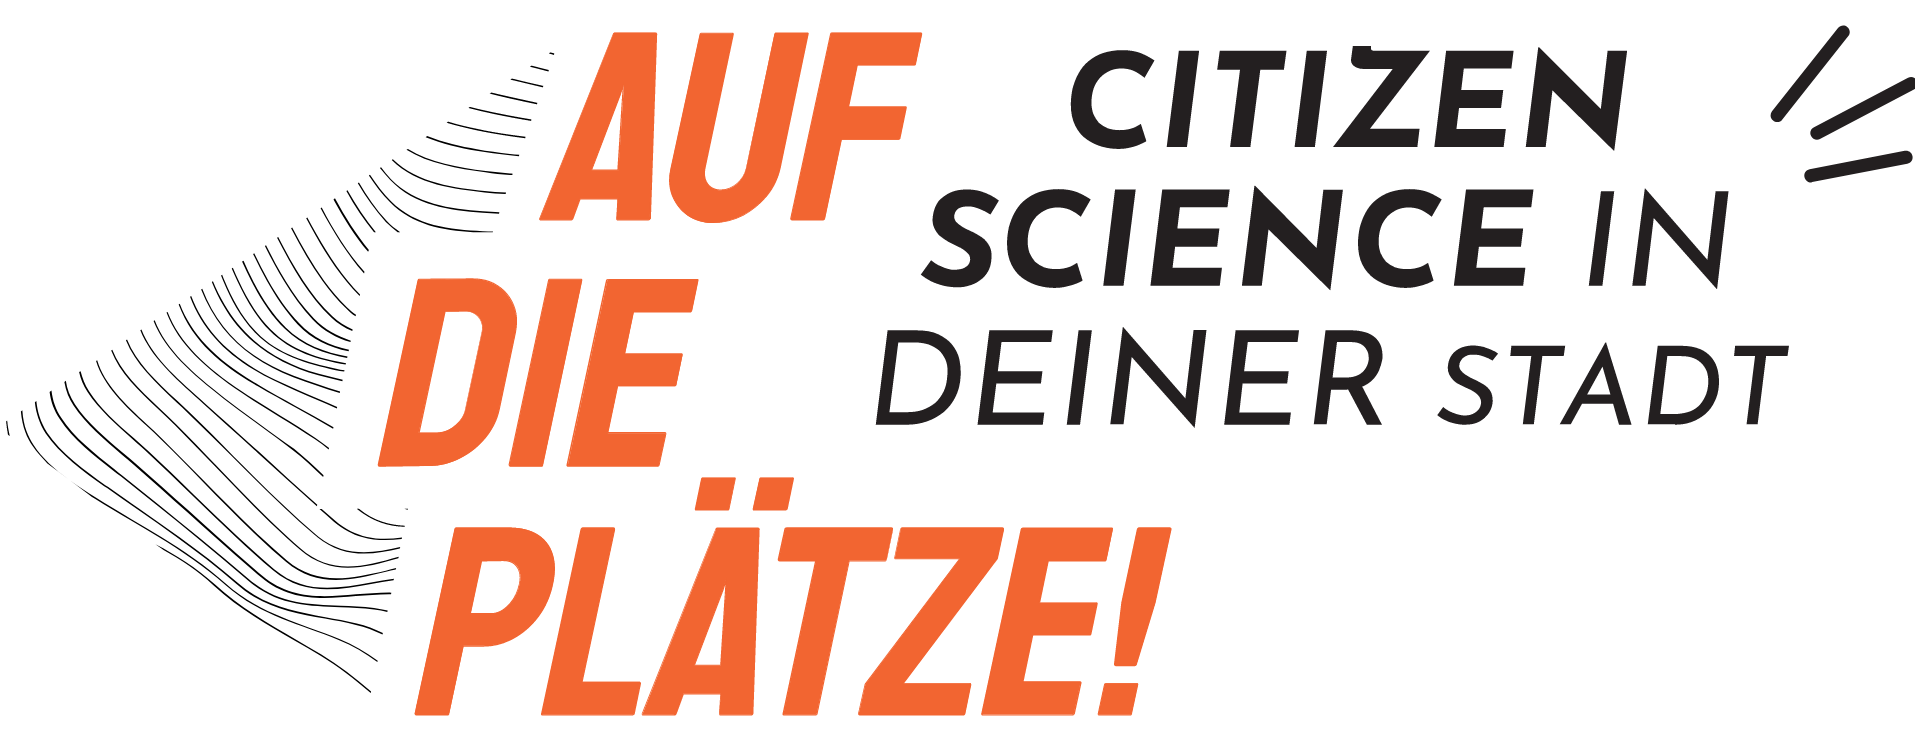 Logo: Auf die Plätze! Citizen Science in Deiner Stadt